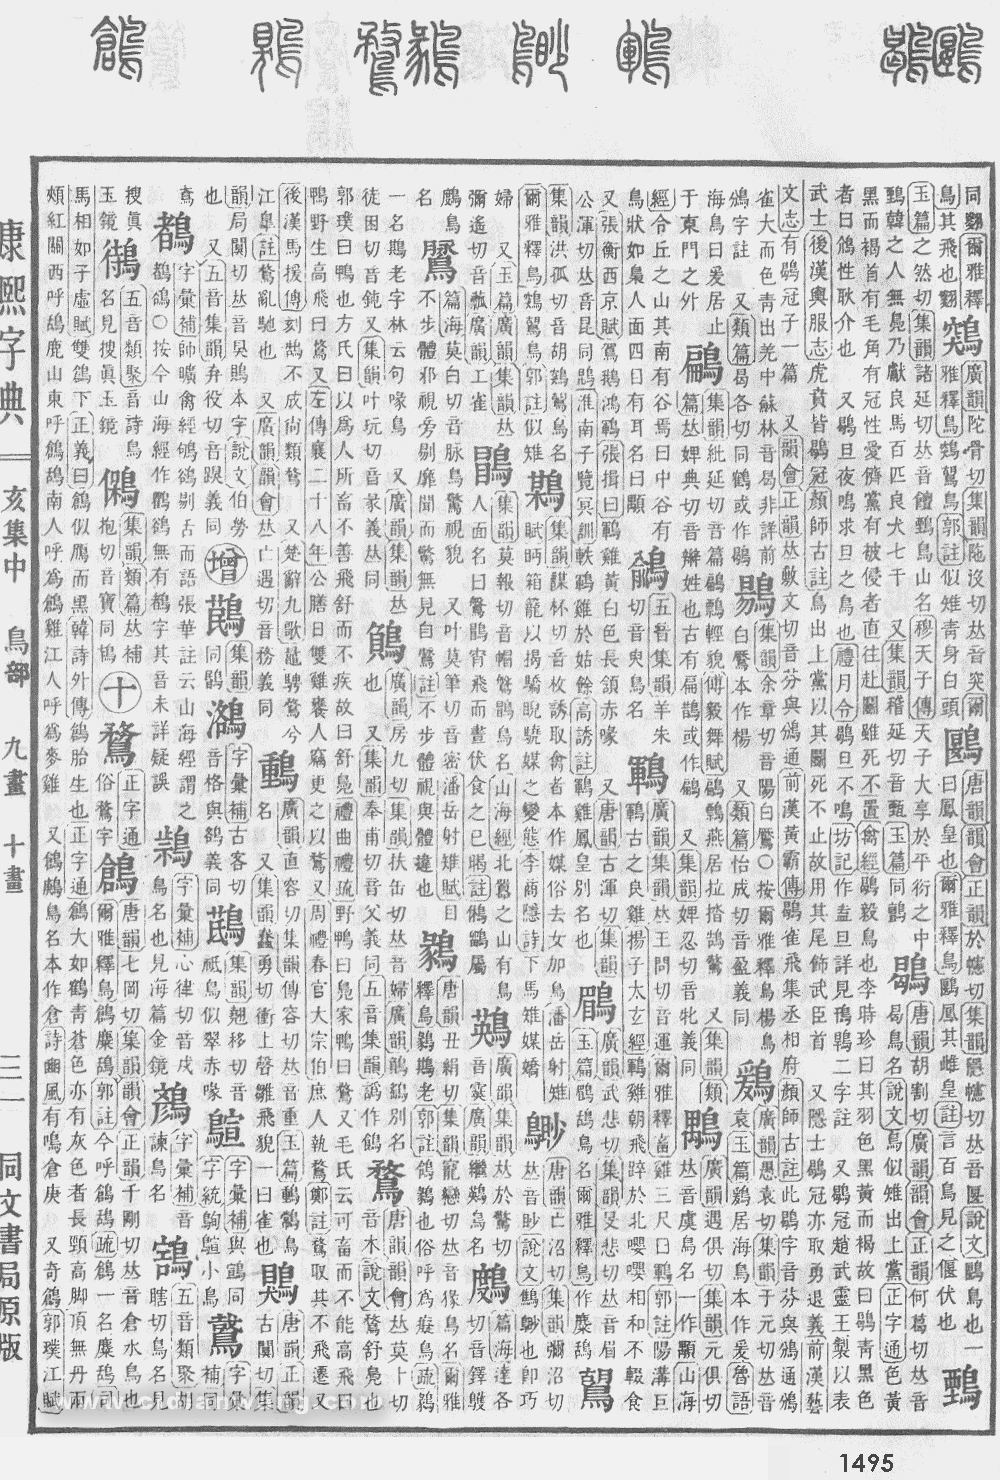 康熙字典掃描版第1495頁